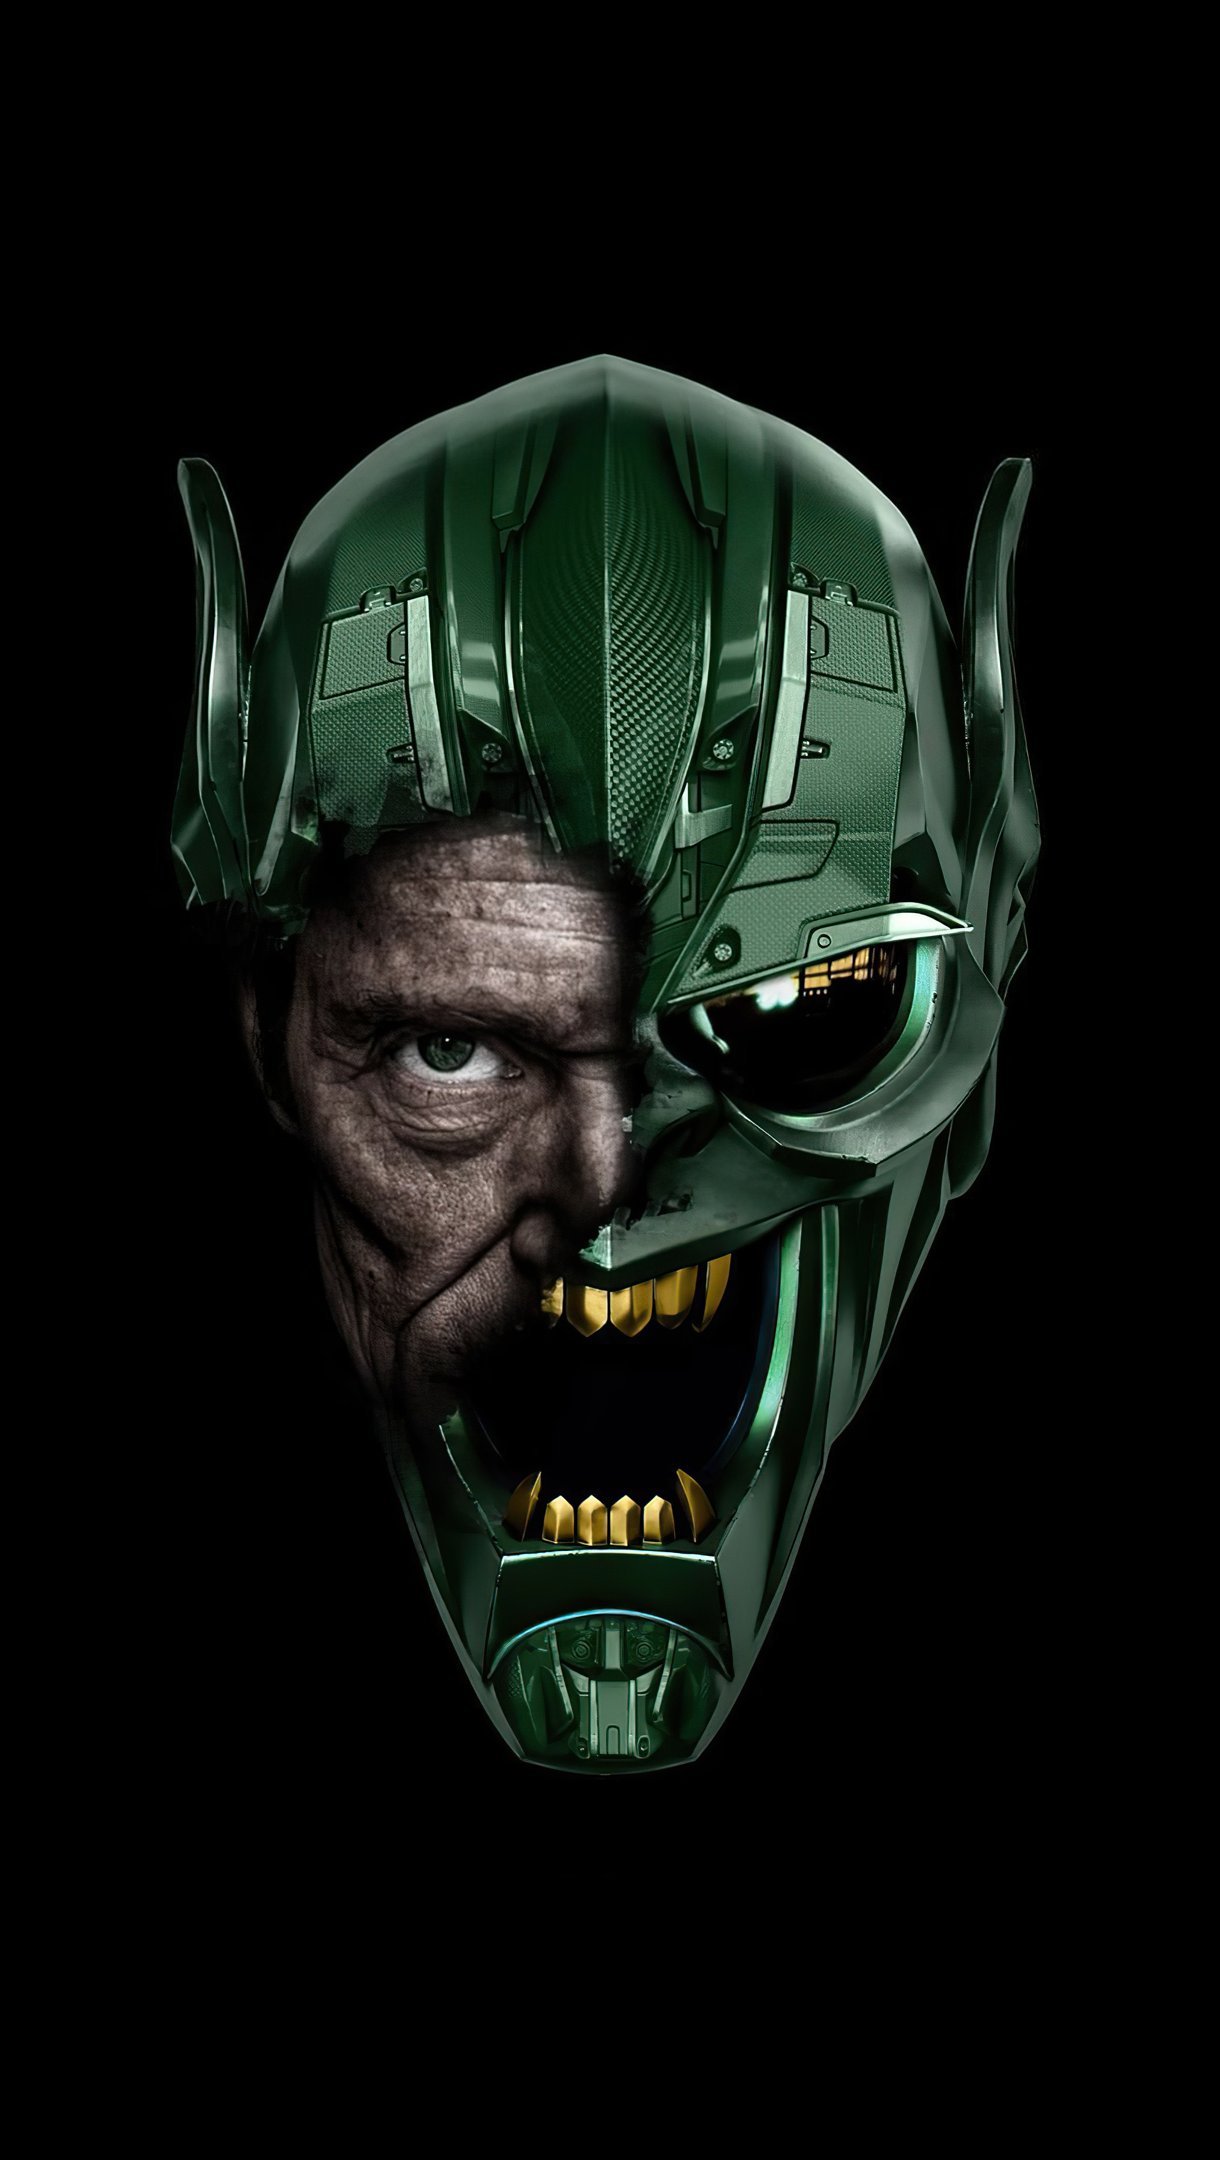 Wallpaper Willem Dafoe as Green Goblin Vertical